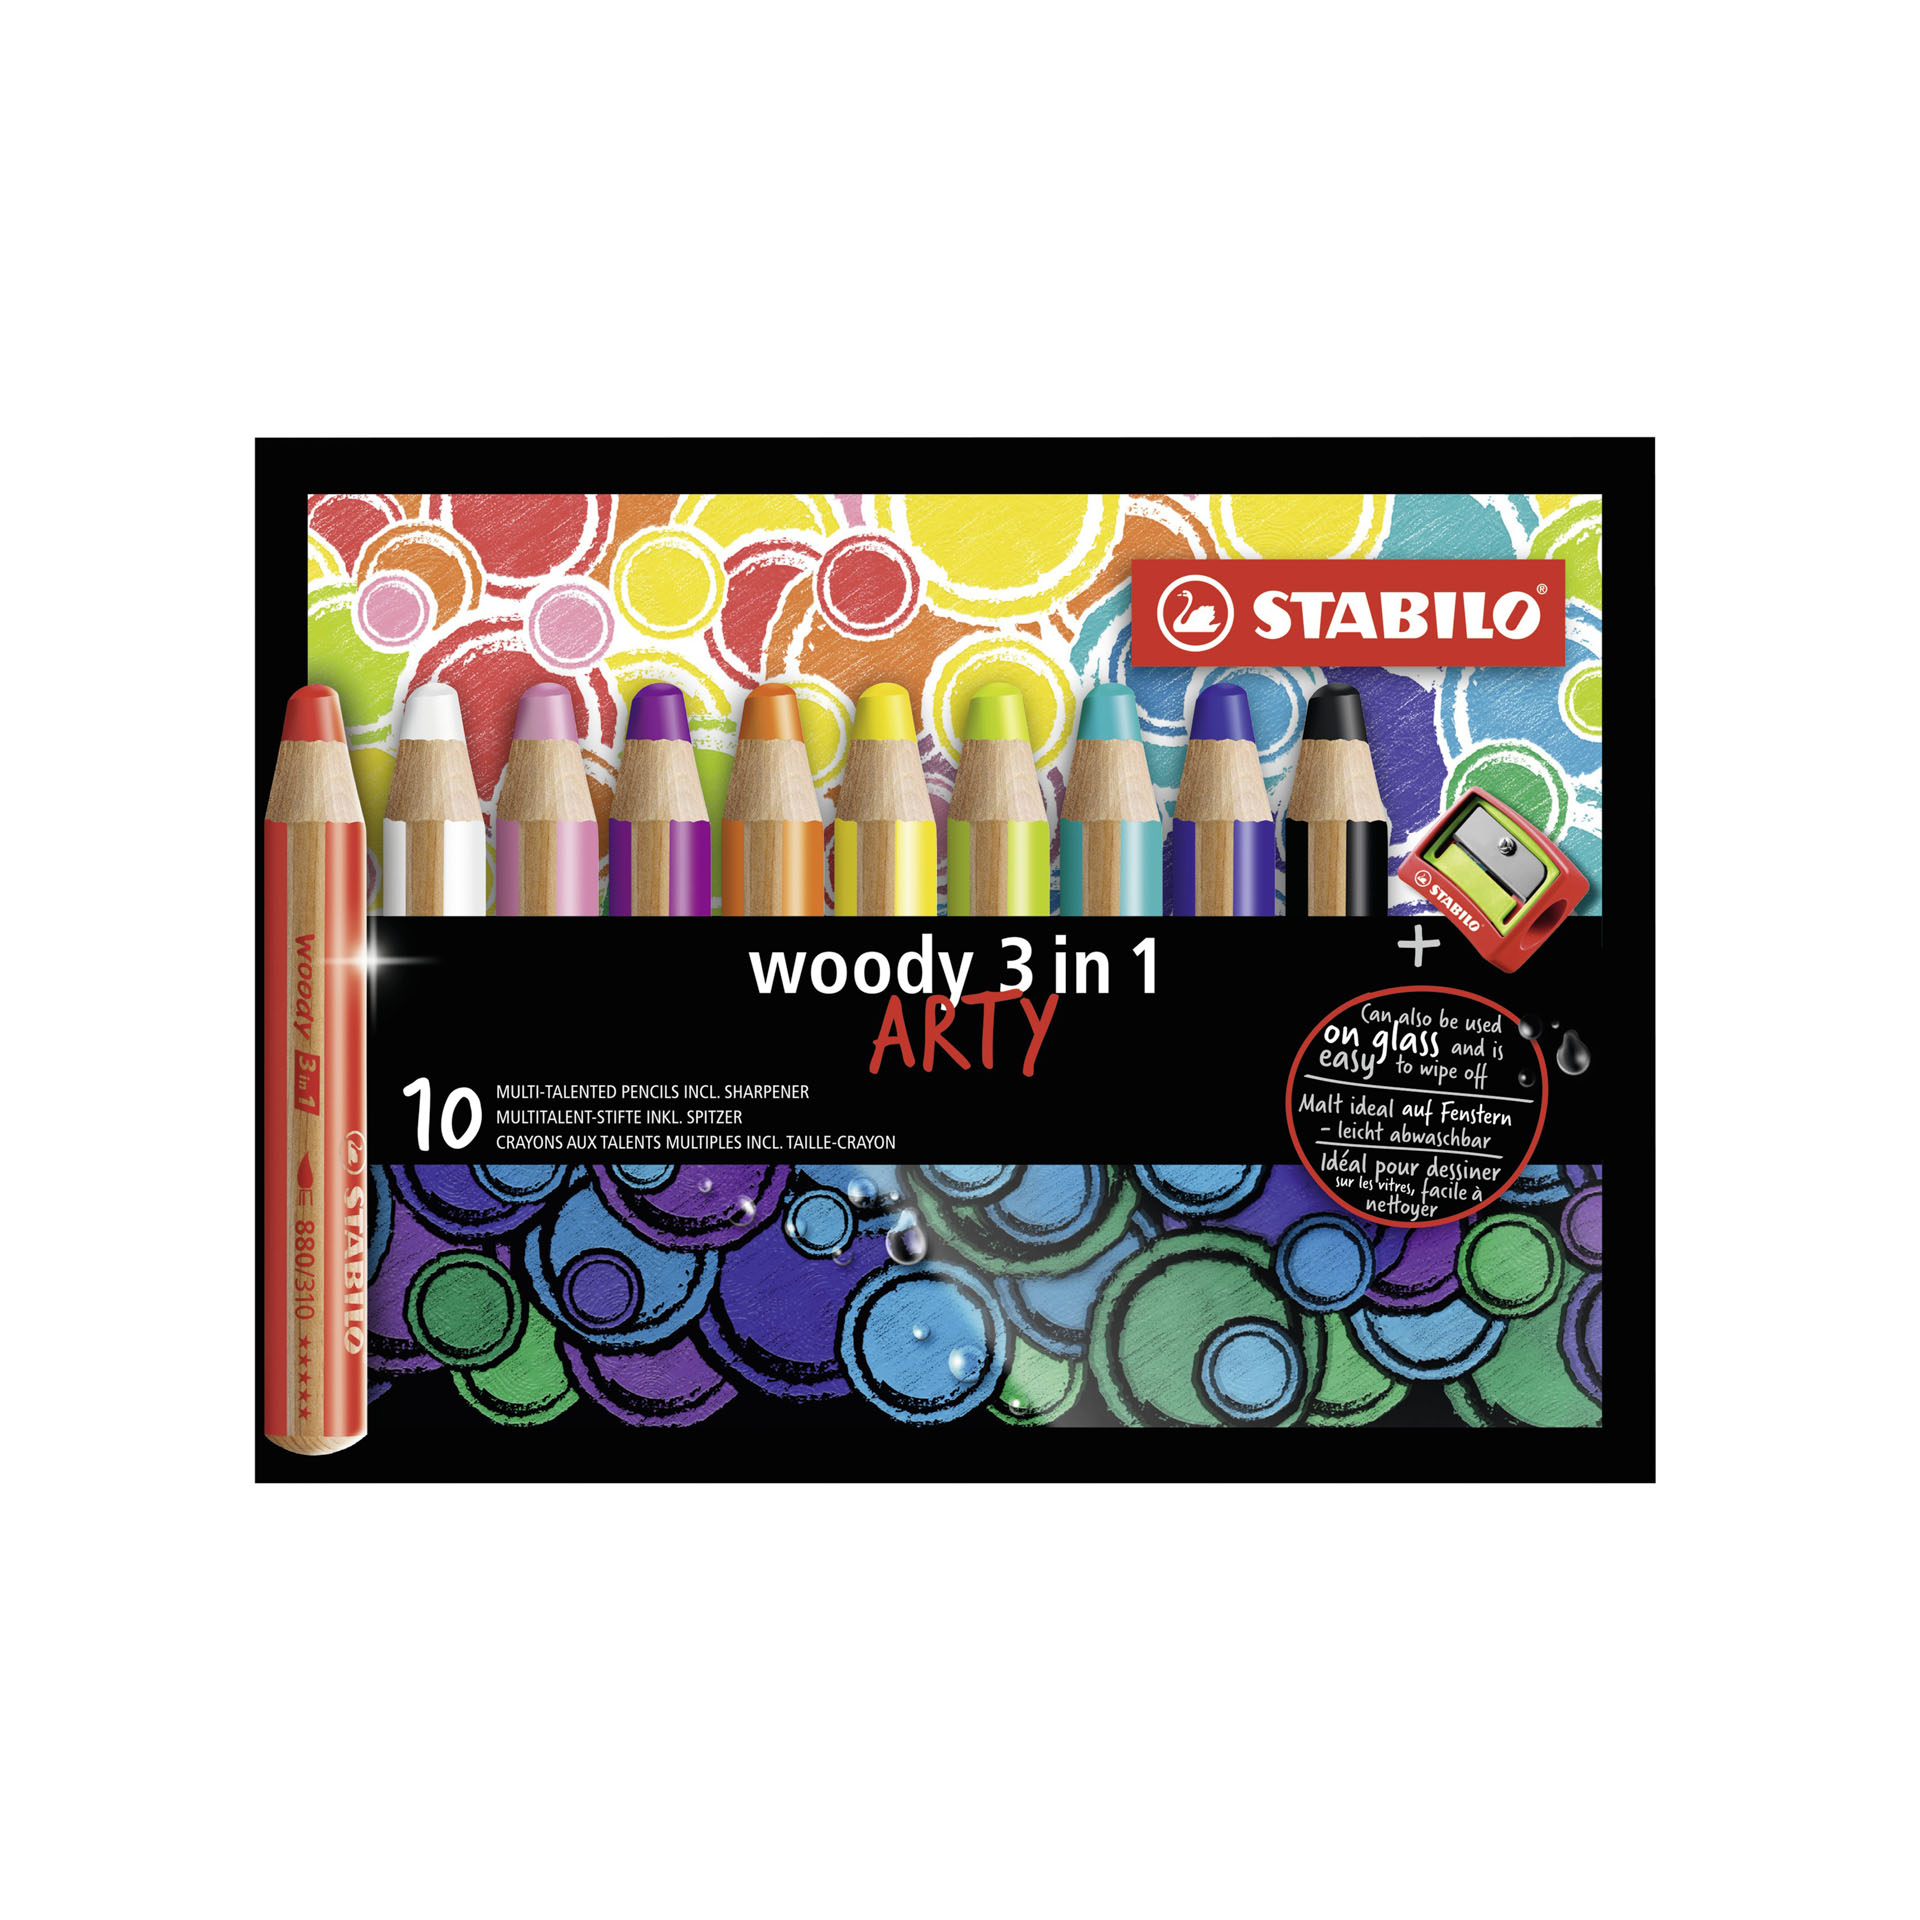 Matita Colorata Multi-funzione - Stabilo Woody 3 In 1 - Arty - Astuccio Da 10 - Con Temperino - Colori Assortiti, , large